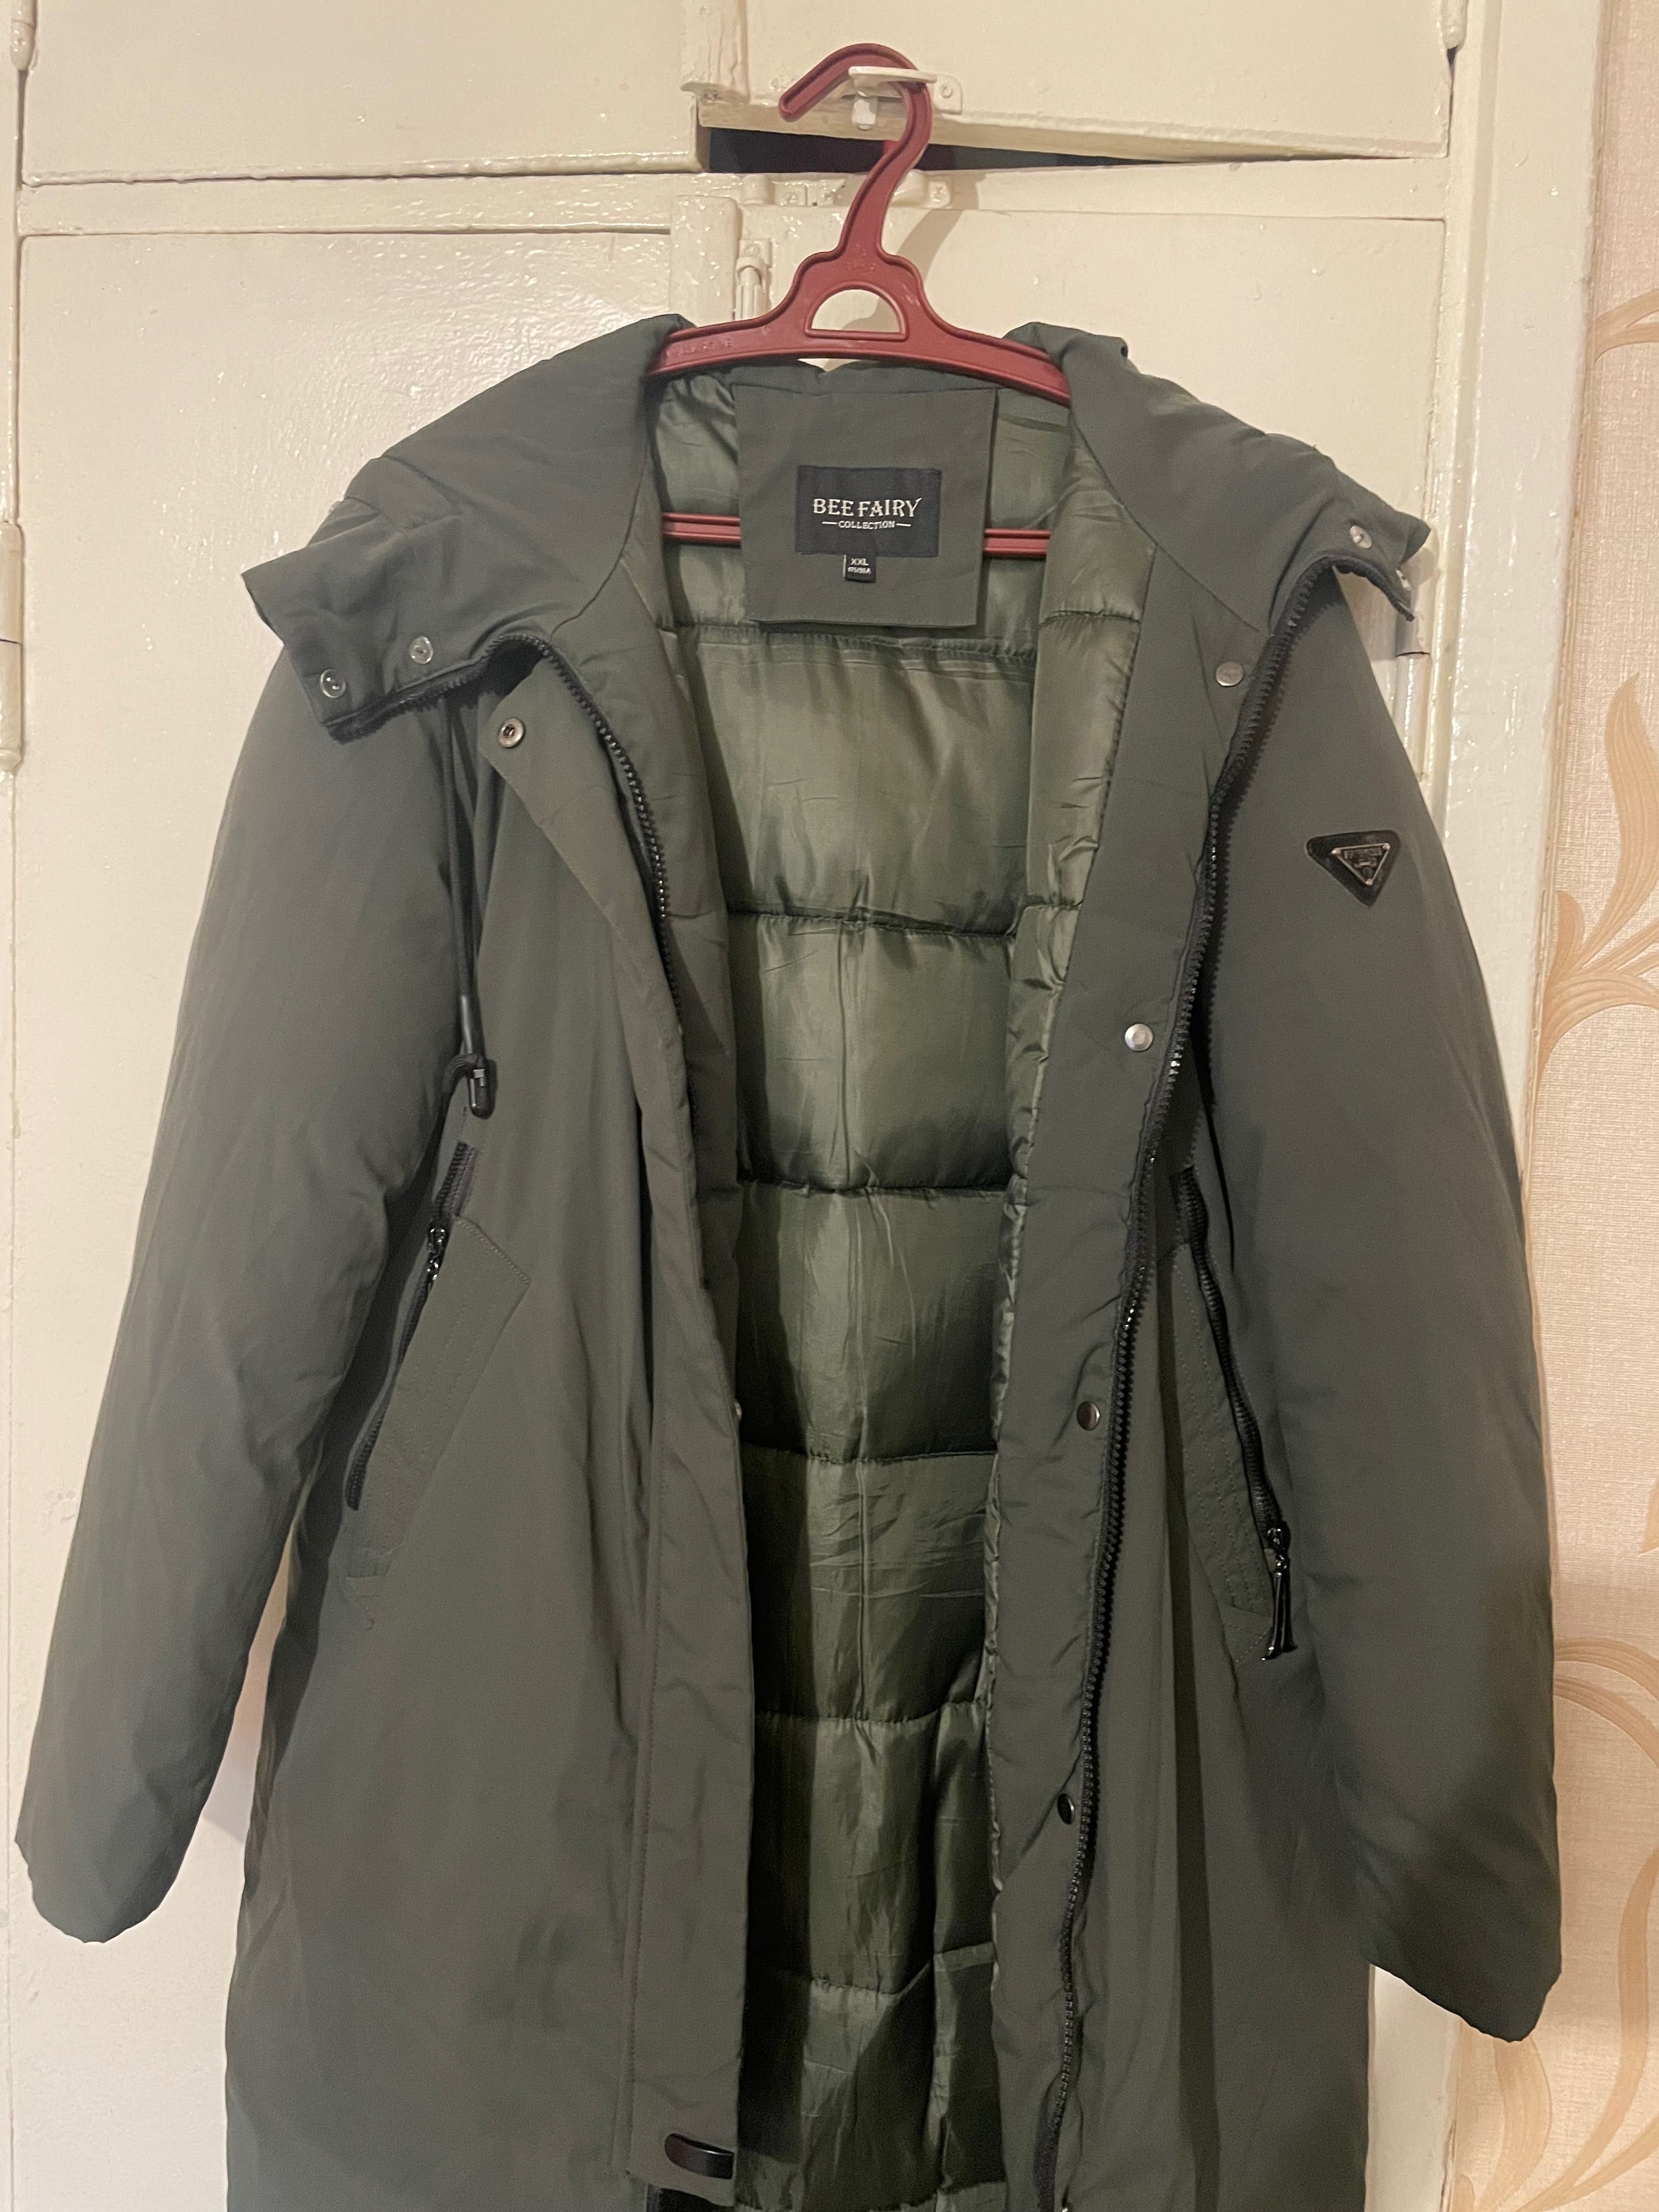 Зимняя куртка женская 42-44